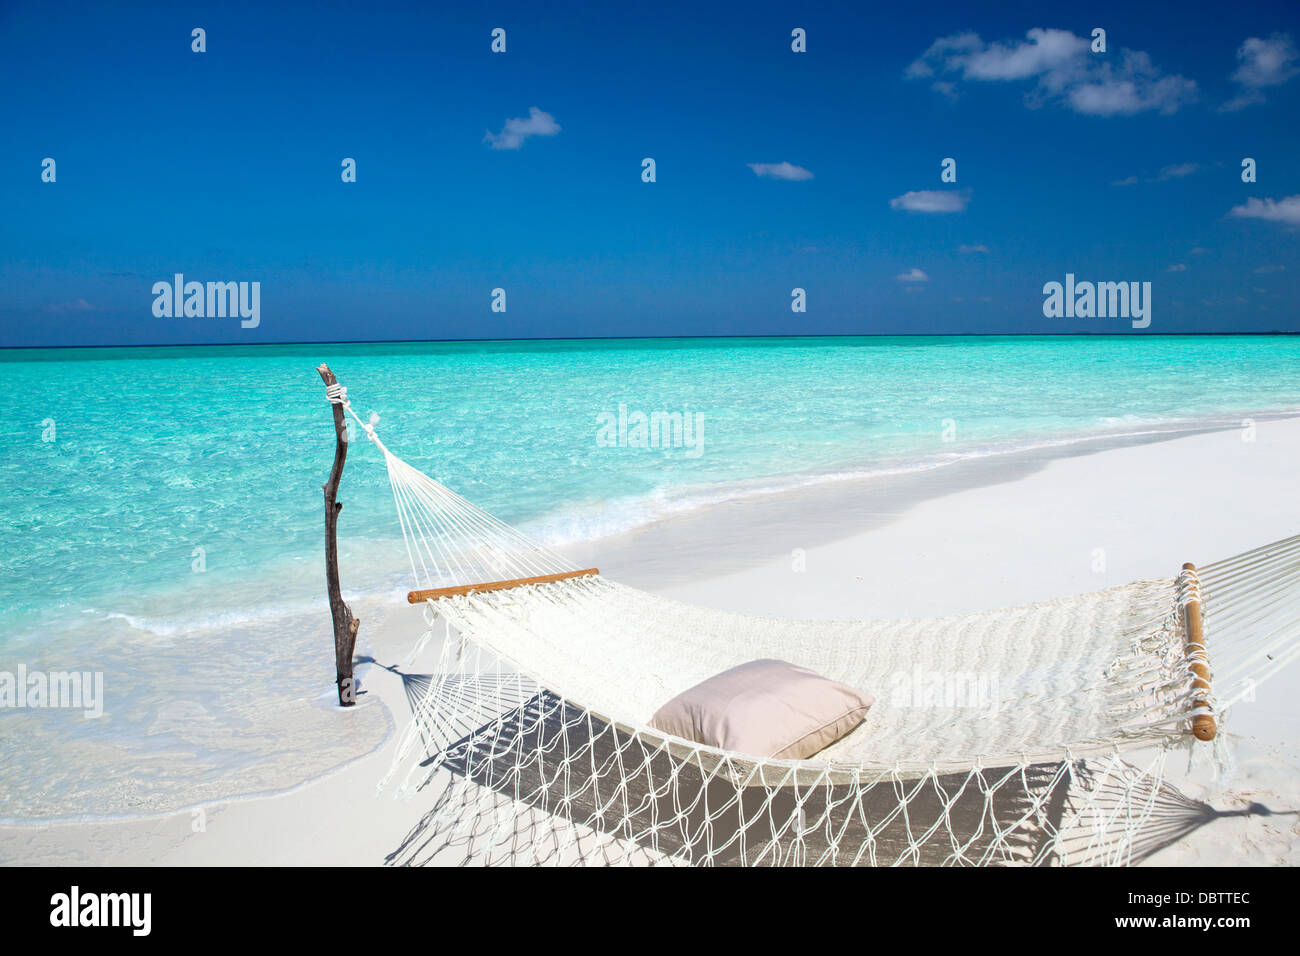 Hamaca de playa tropical, Maldivas, Océano Índico, Asia Foto de stock